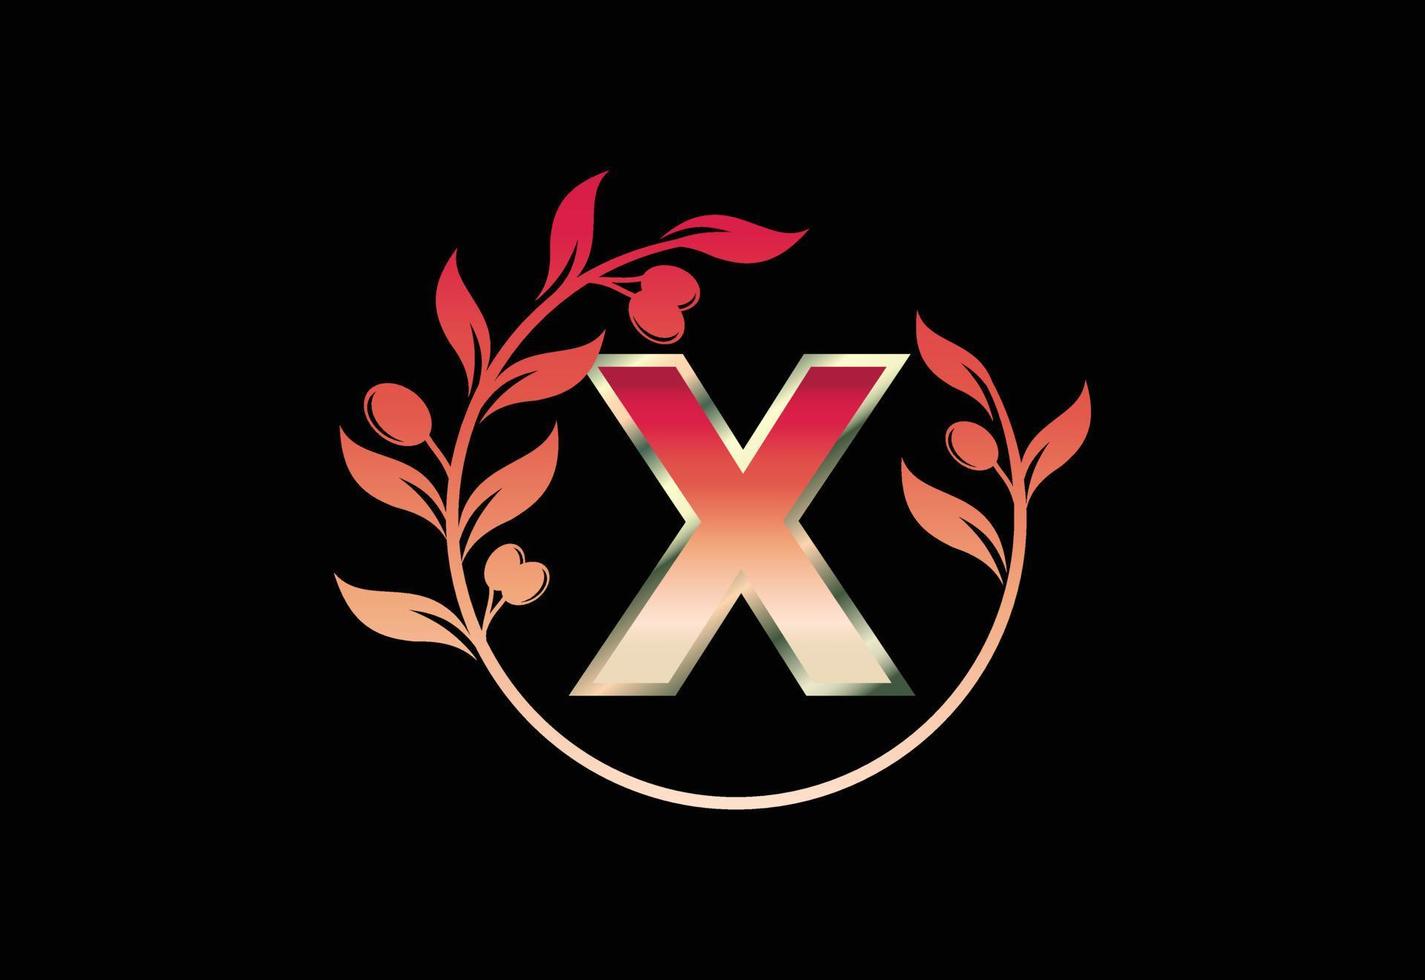 símbolo inicial de la letra x con corona de rama de olivo, marco floral redondo hecho por la rama de olivo vector